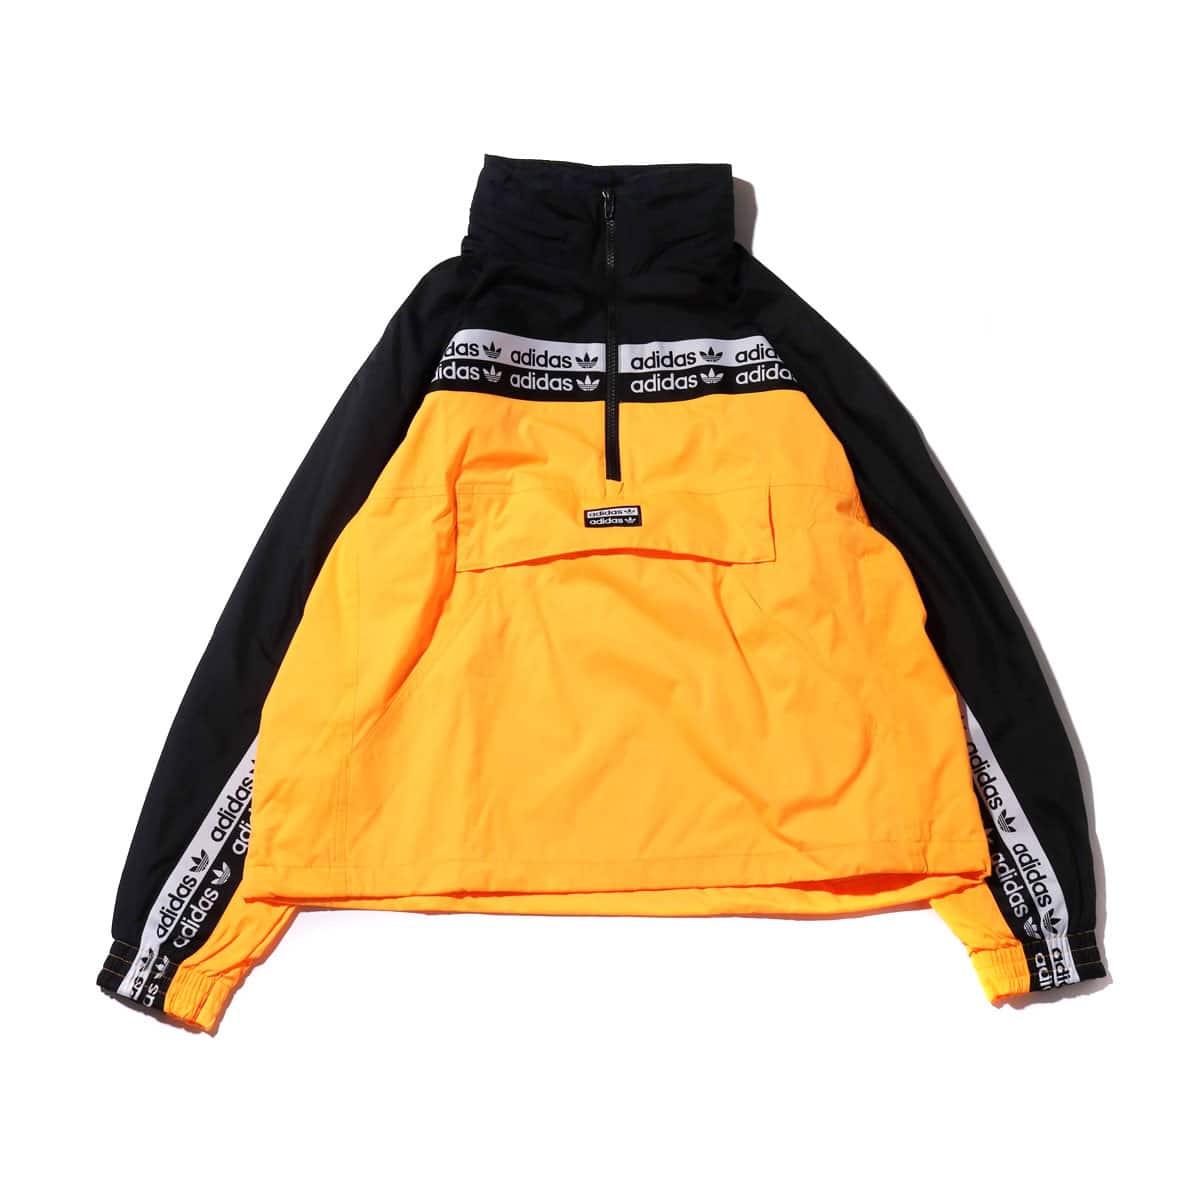 adidas wind track jacket